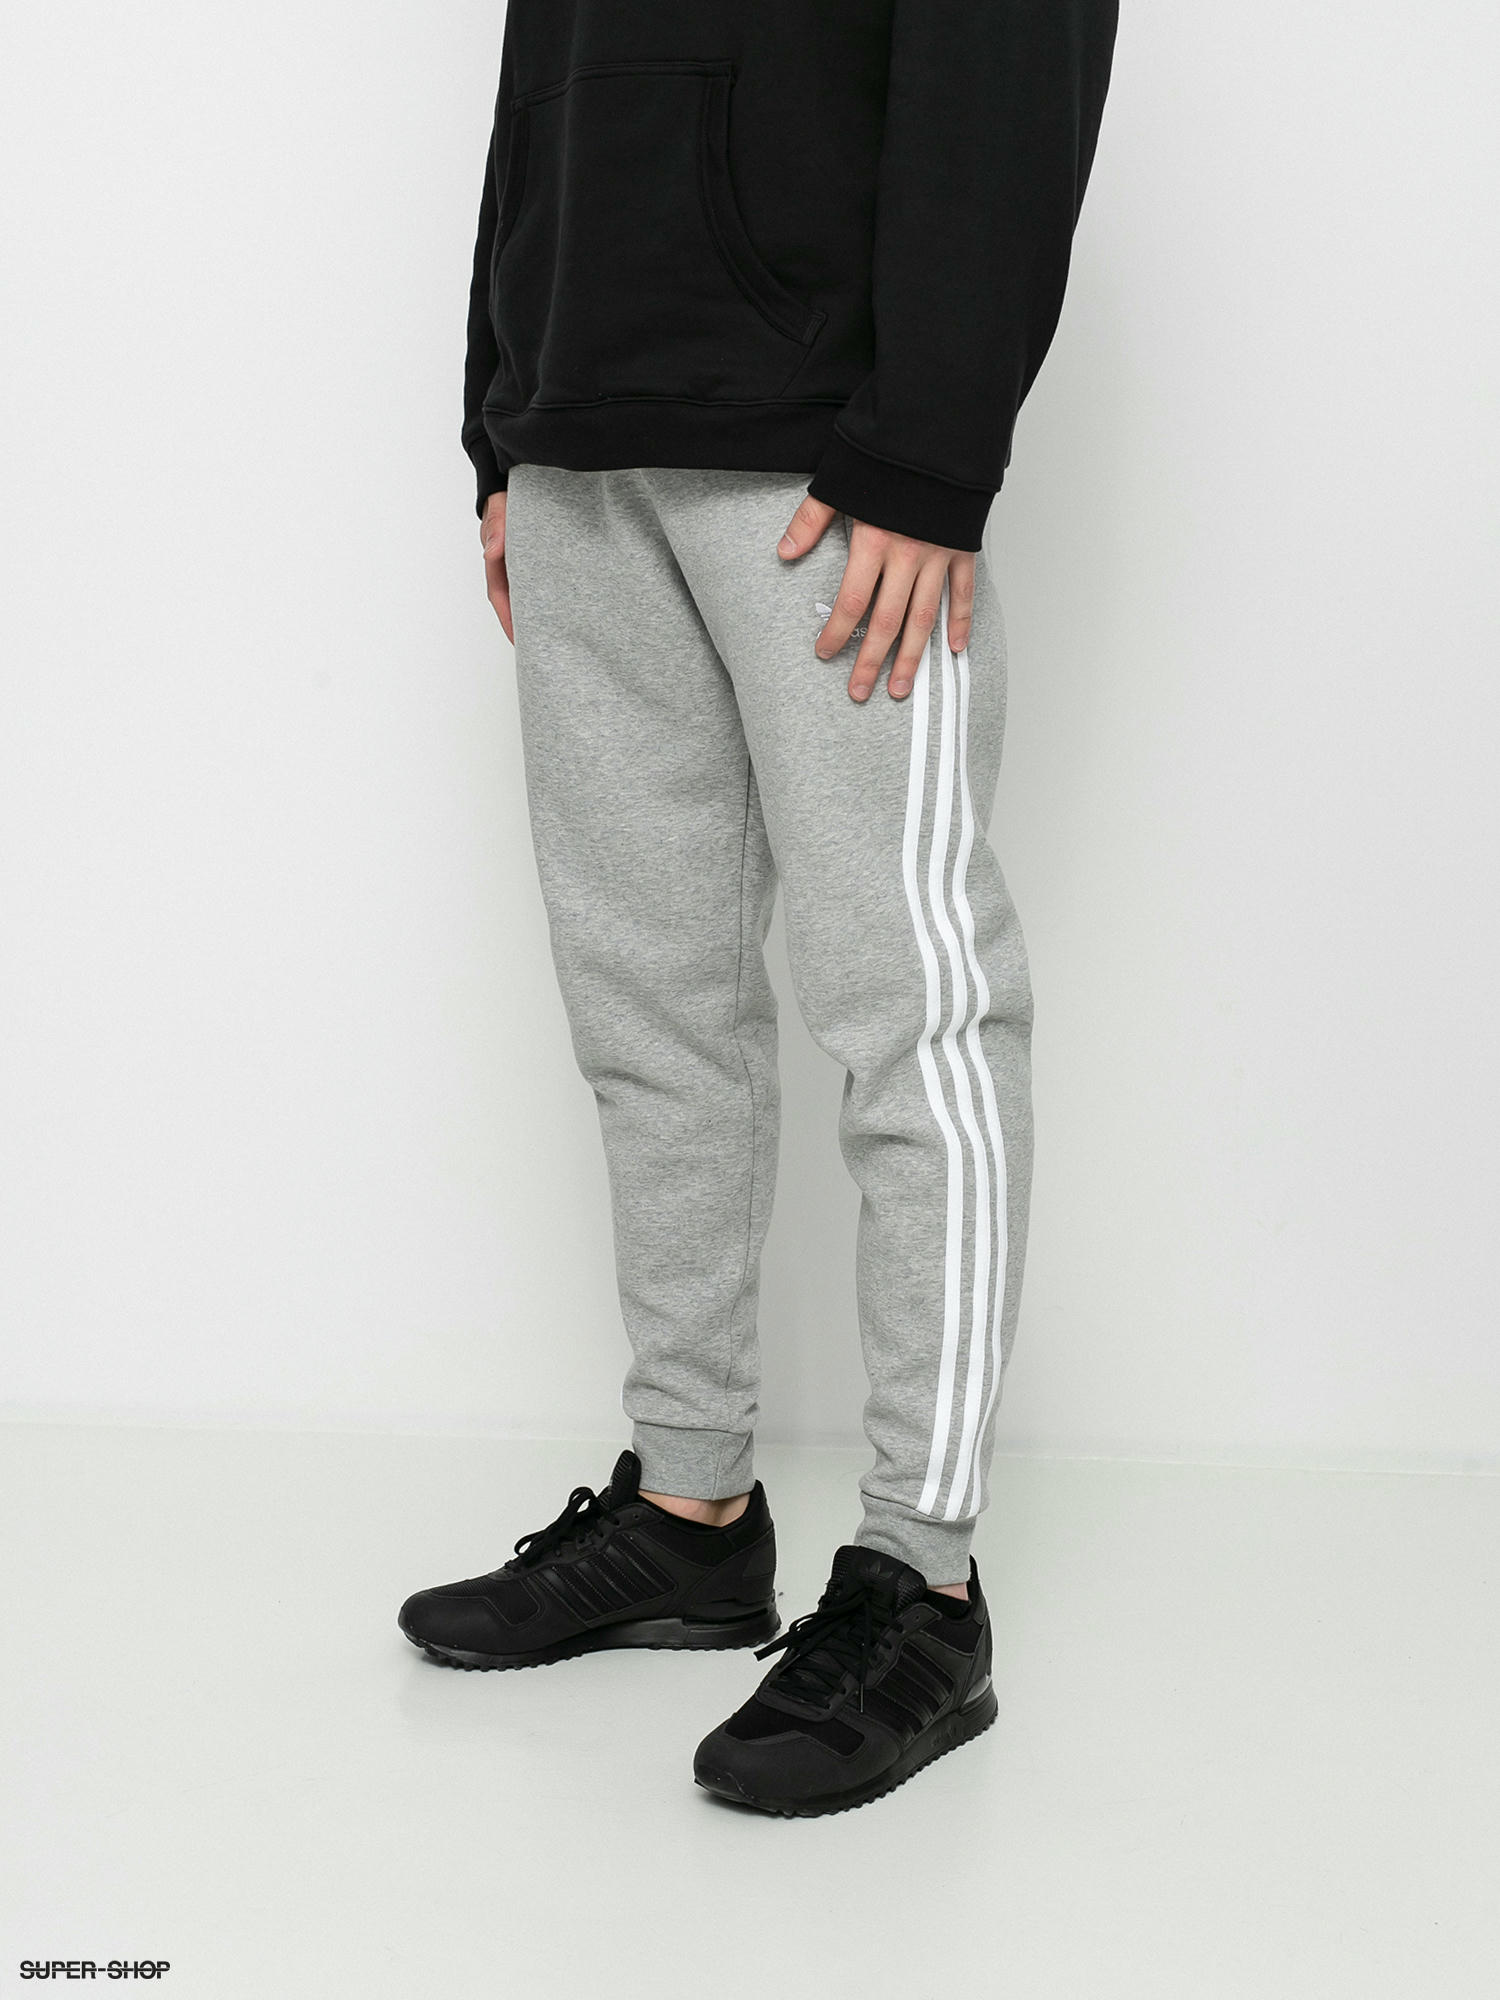 Adidas Originals 3 Stripes Track Pants Grey  80s Casual Classics